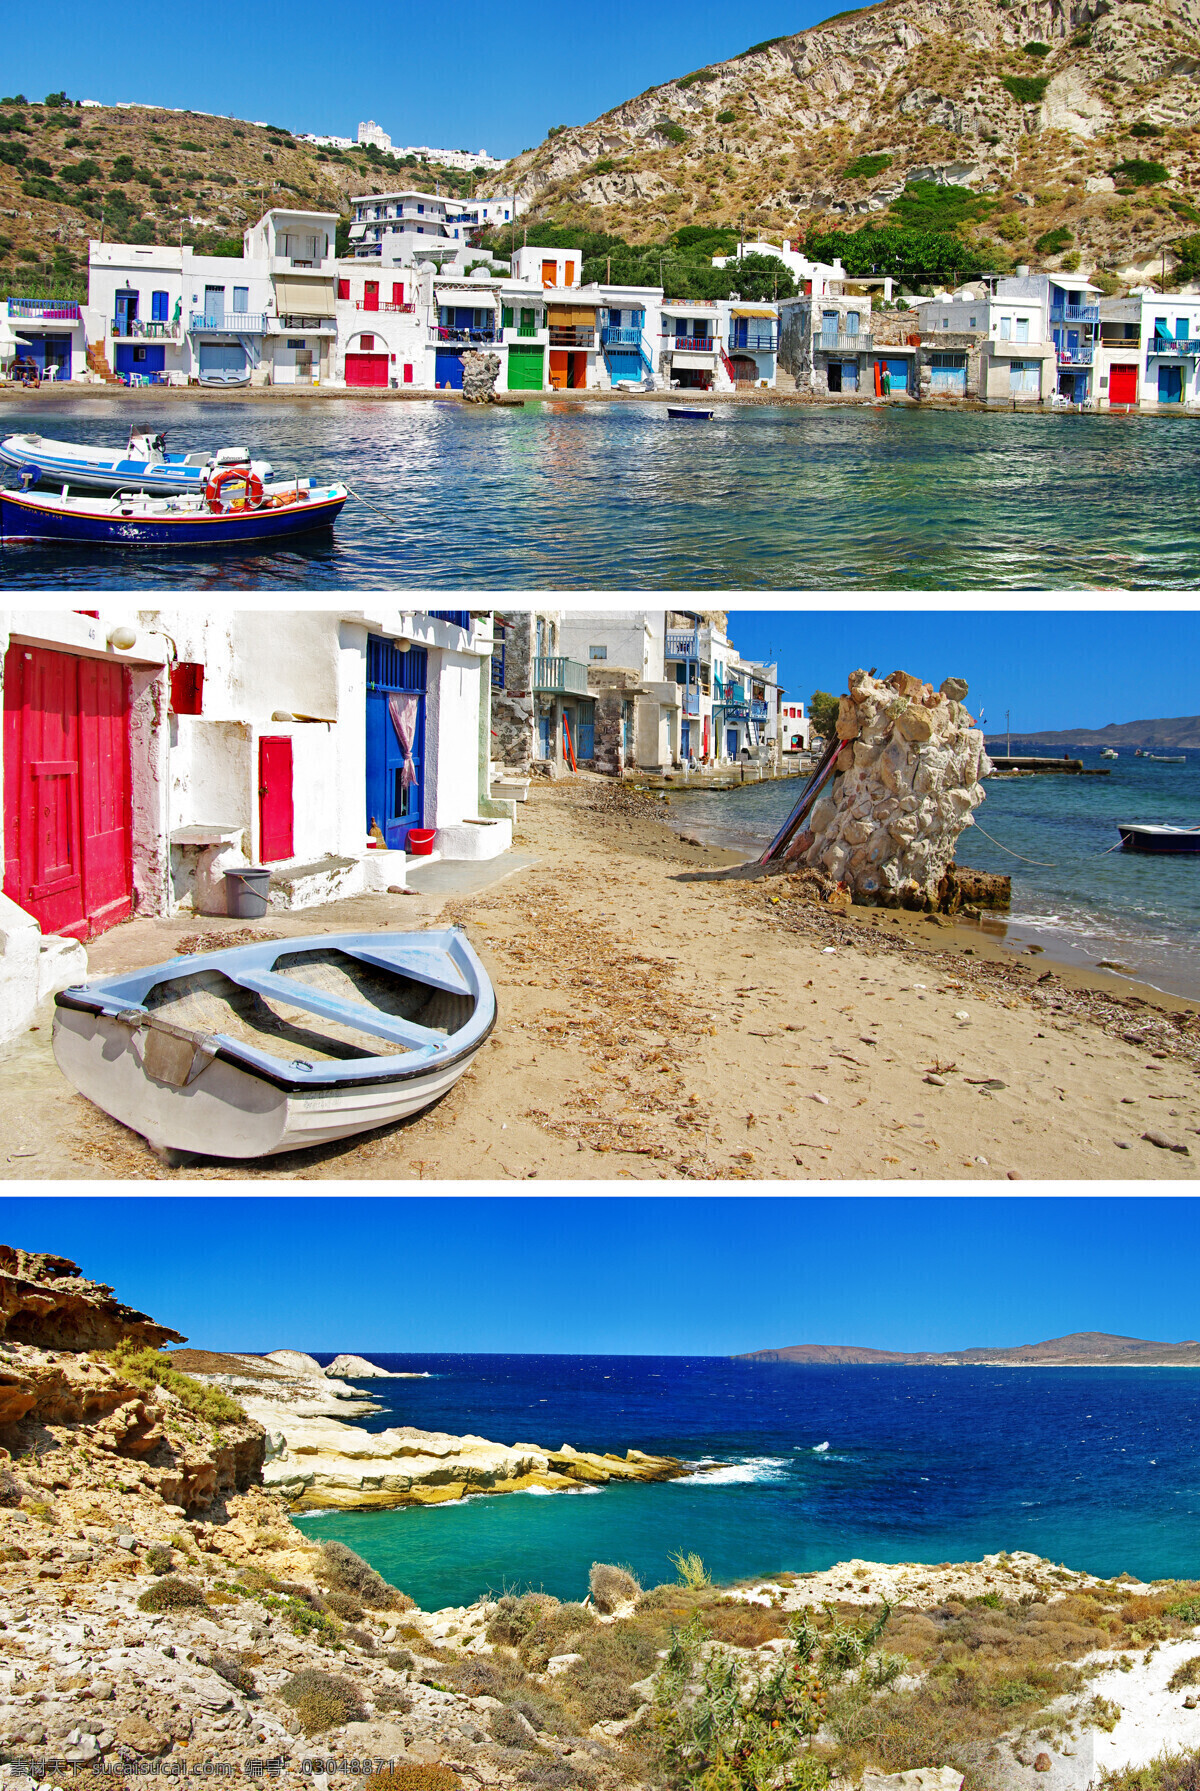 美丽 希腊 建筑 风景图片 海洋 圣托里尼风景 爱琴海风景 海岸城市风光 希腊旅游景点 国外建筑 旅游景区 国外旅游 城市风光 环境家居 白色